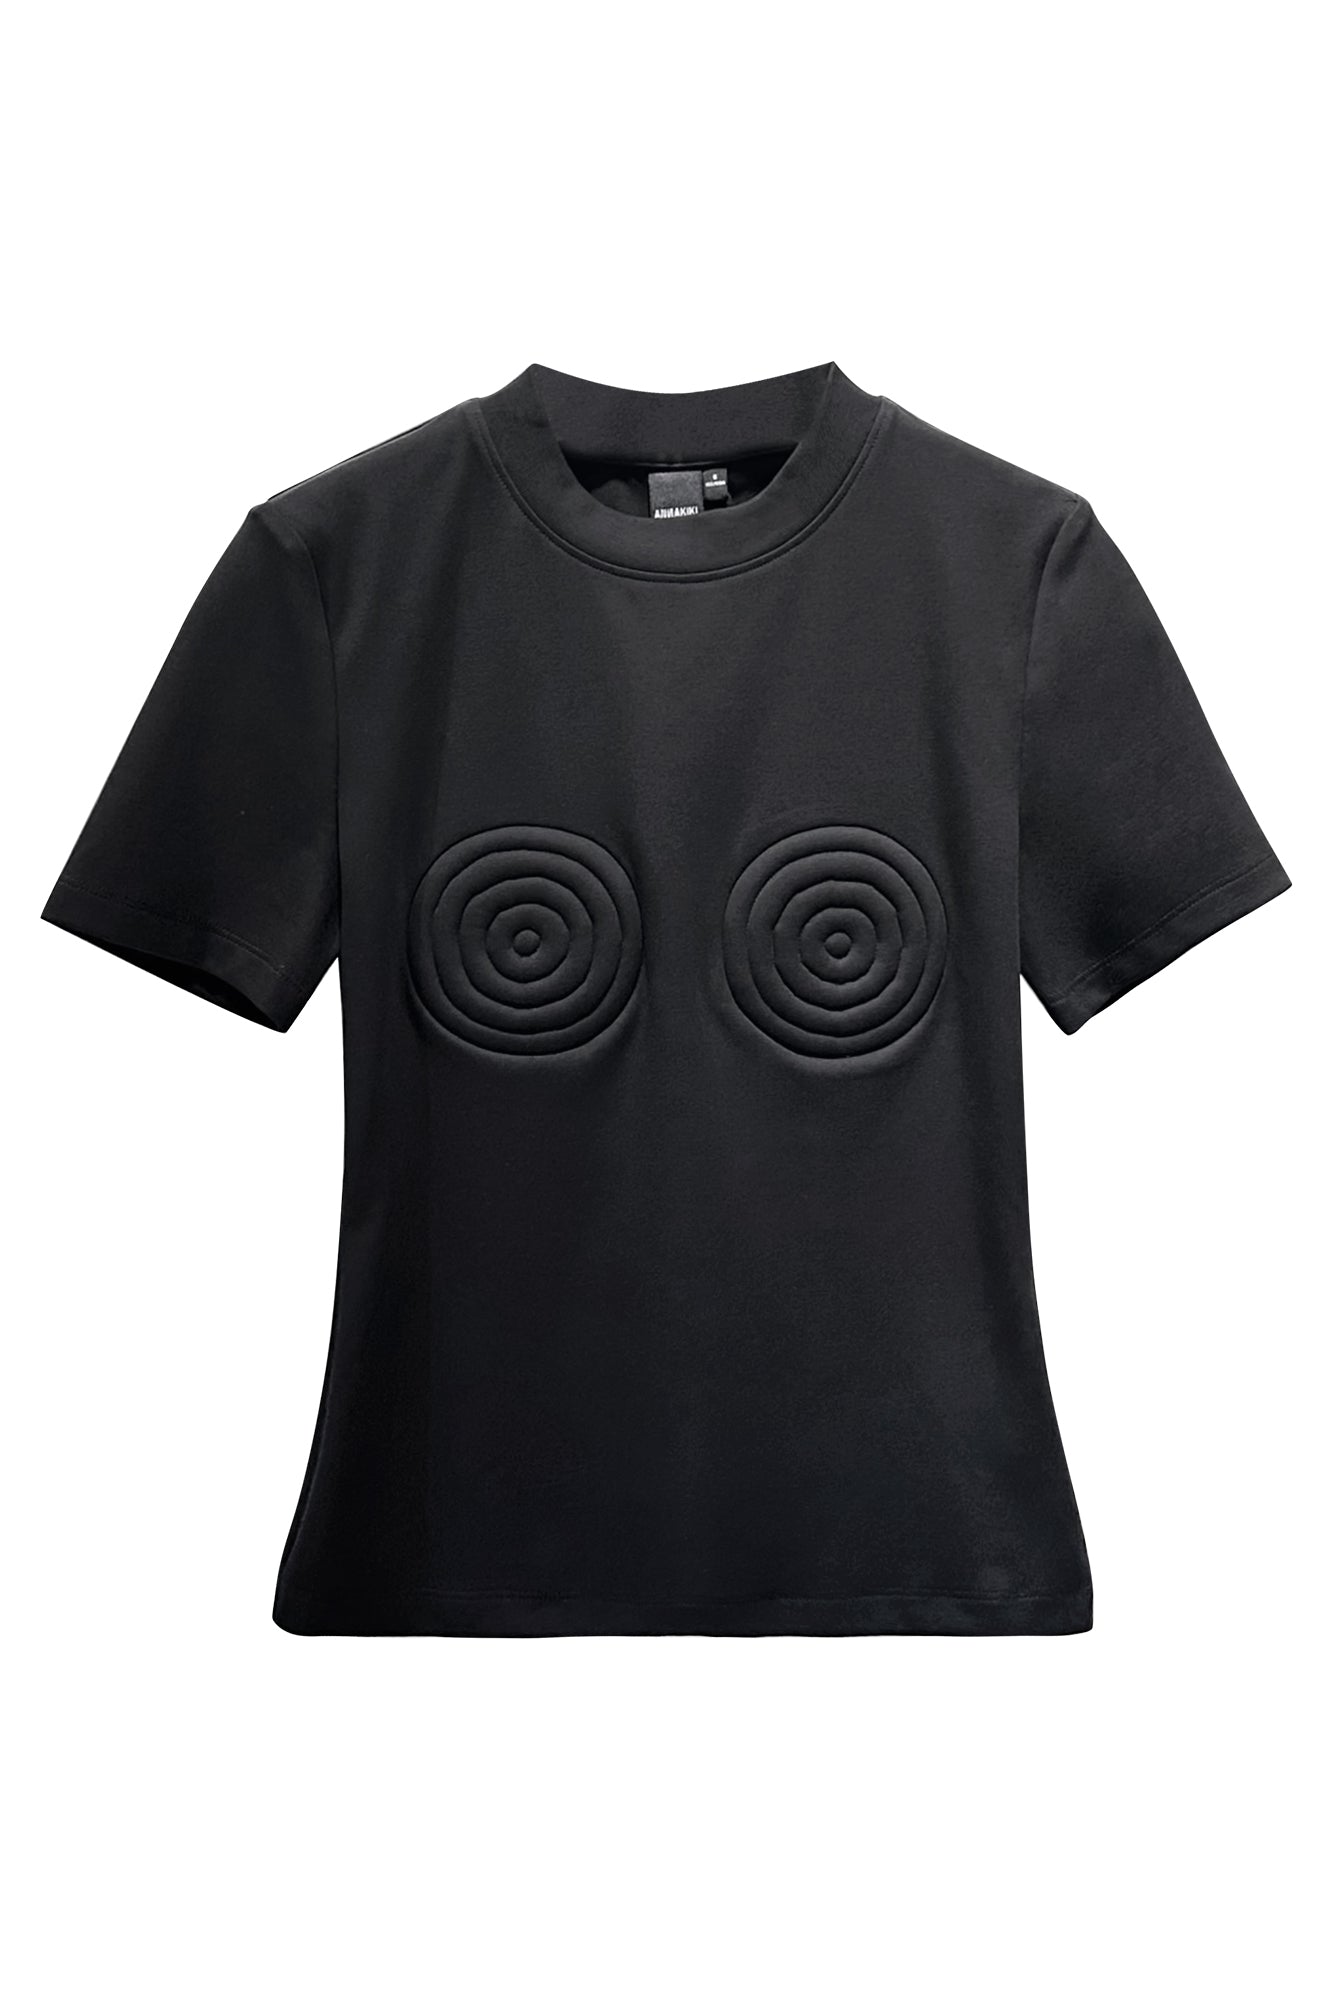 3D spiral shaped T-shirt